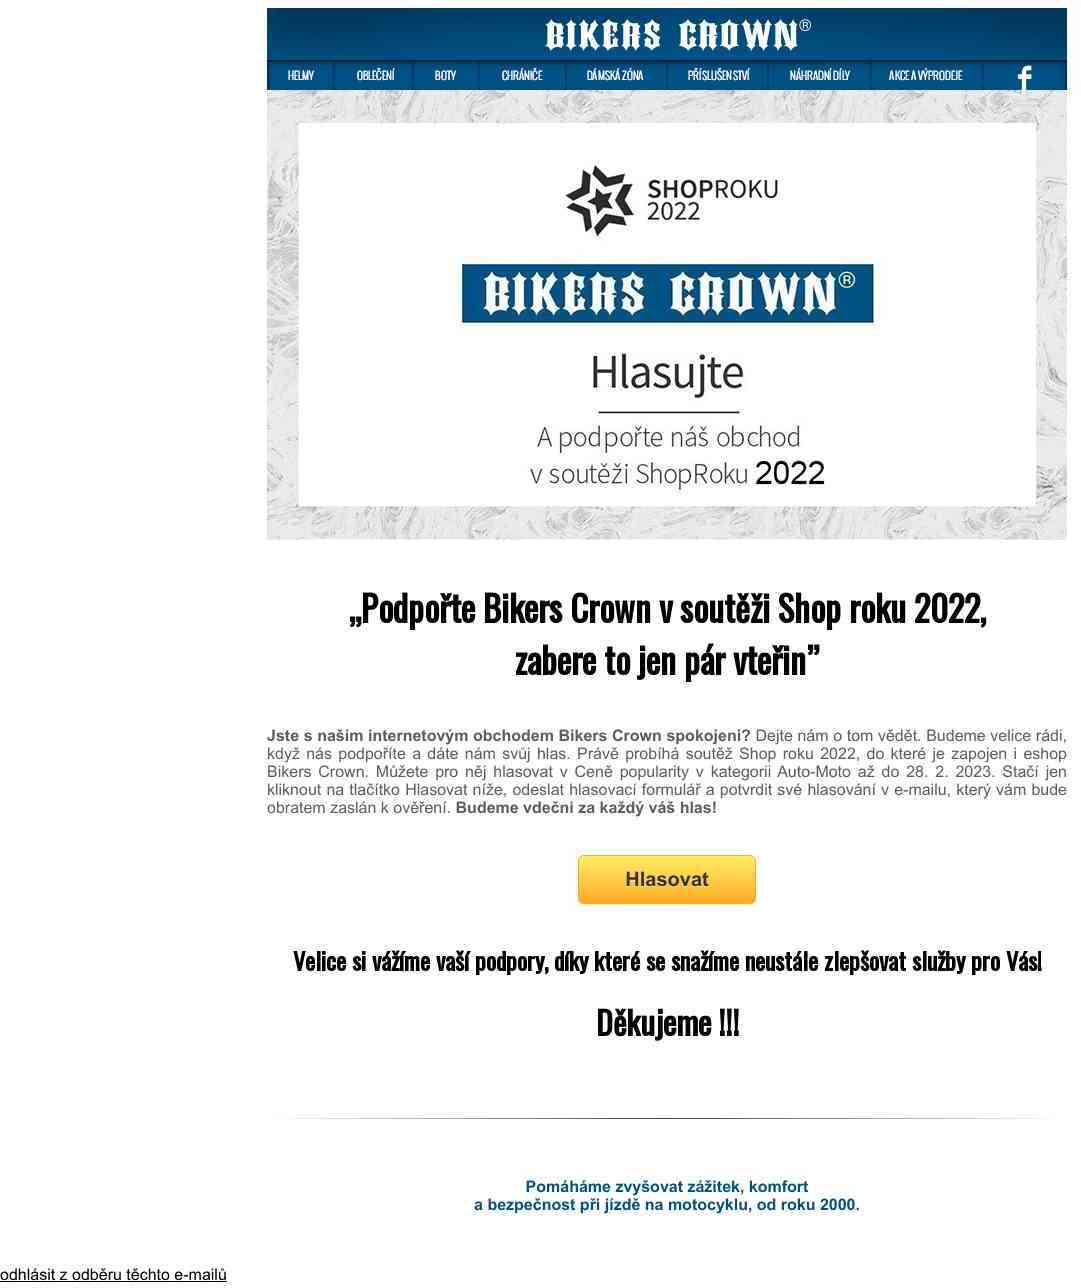 Podpořte Bikers Crown v soutěži Shop roku 2022